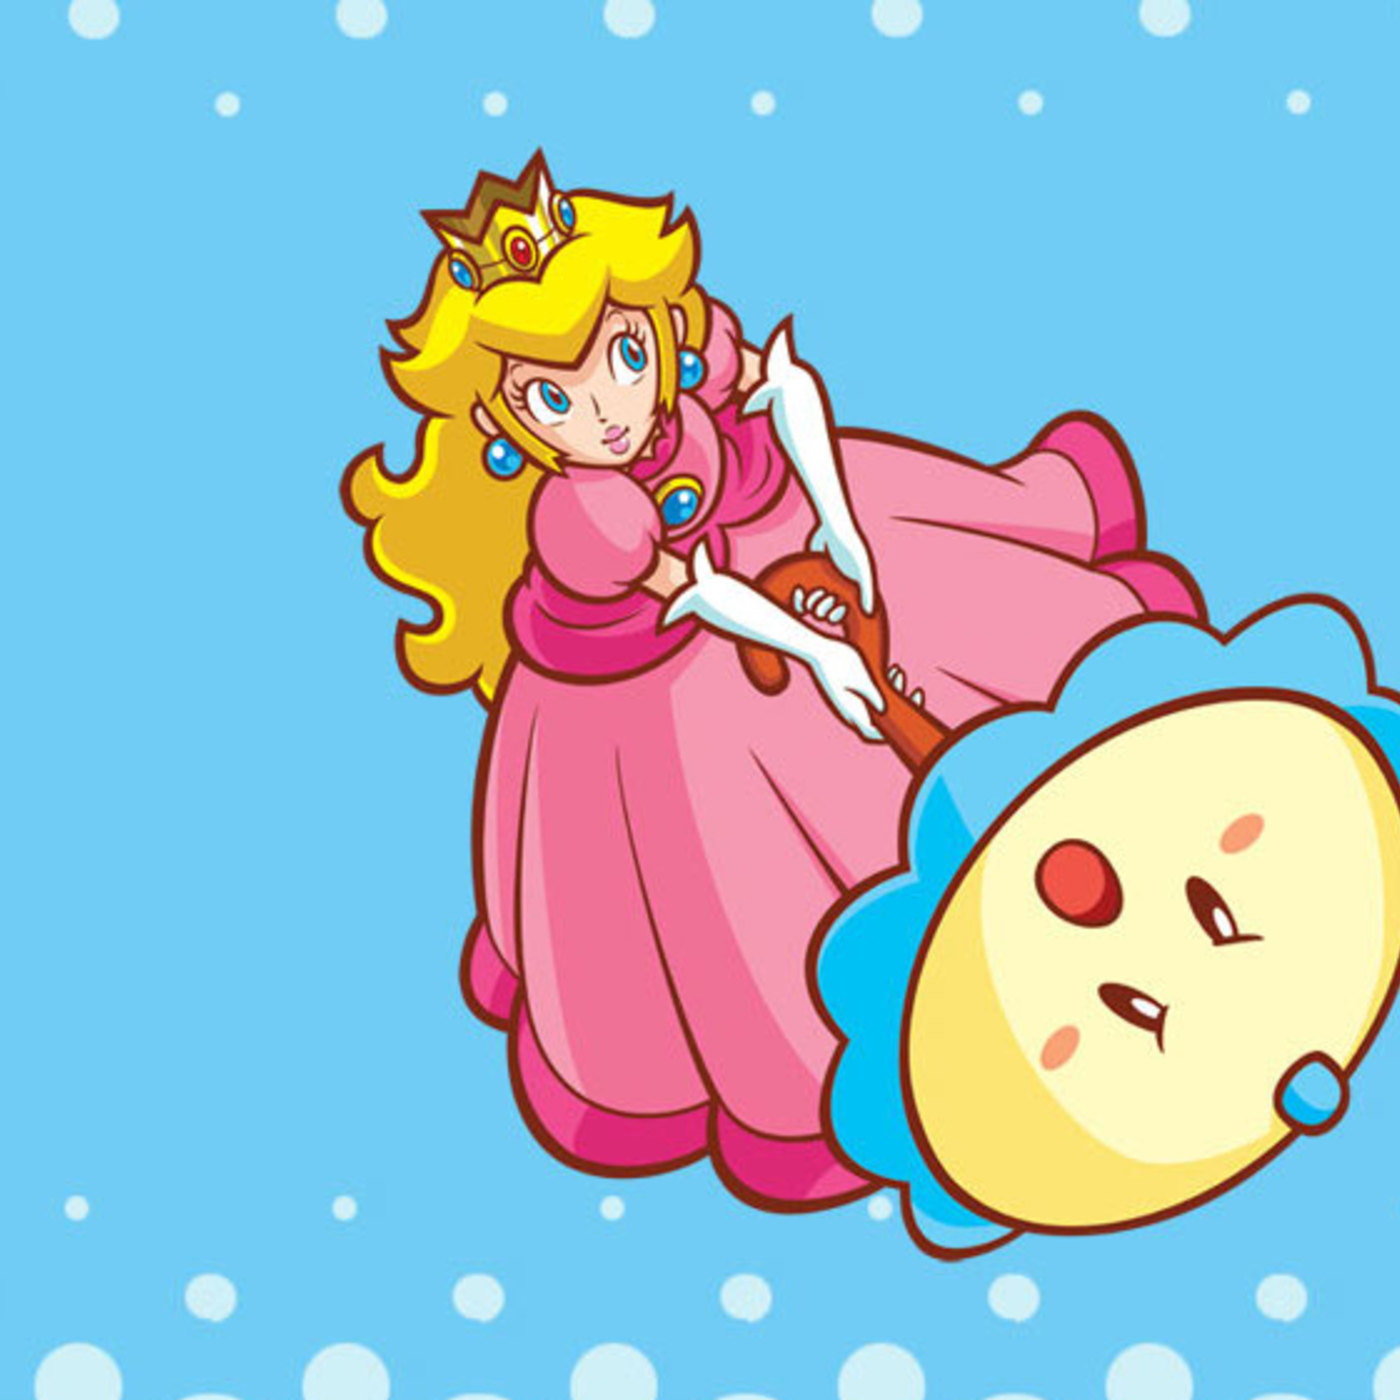 Extrasode: Super Princess Peach.